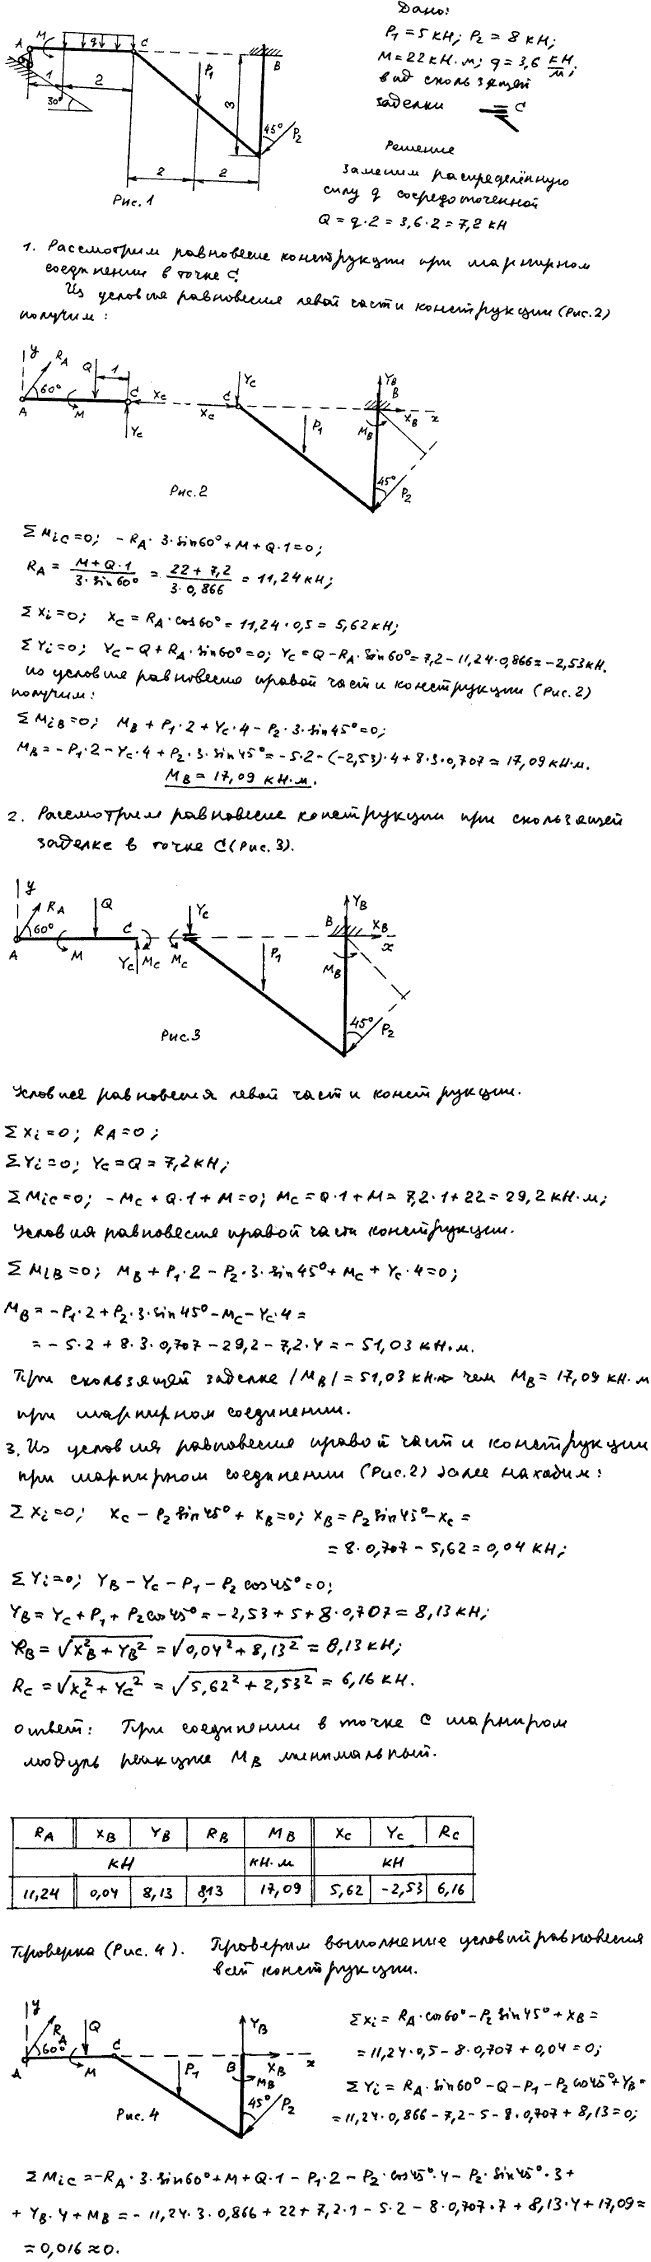 Задание C3 вариант 15. P1=5 кН; P2=8 кН; M=22 кН*м; q=3,6 кН/м; исследуемая реакция MB; вид скользящей заделки